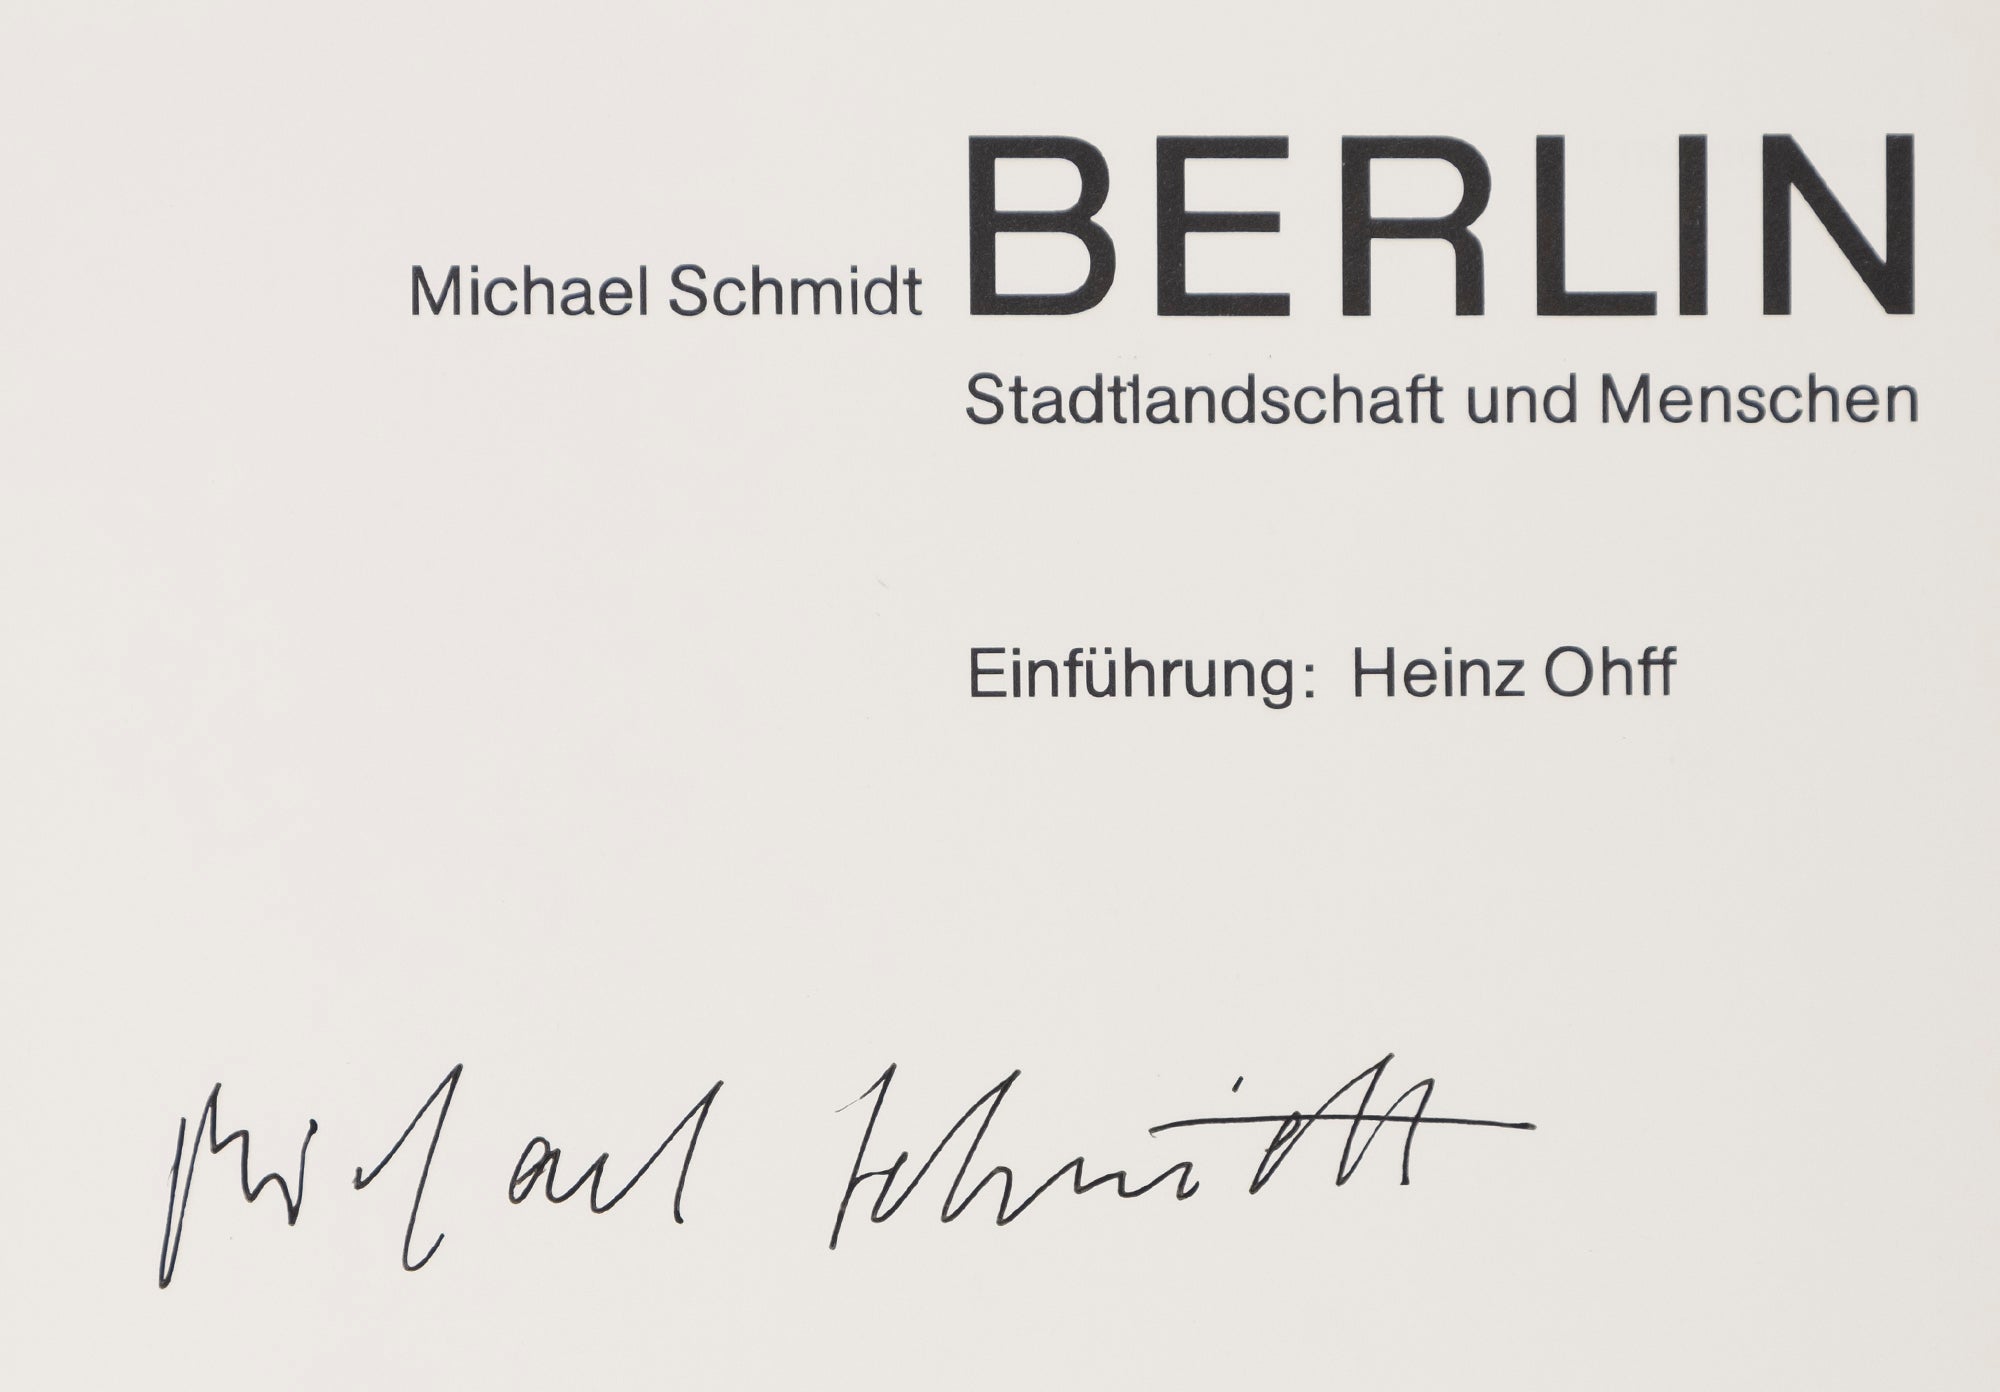 Michael Schmidt - Berlin, Stadtlandschaft und Menschen